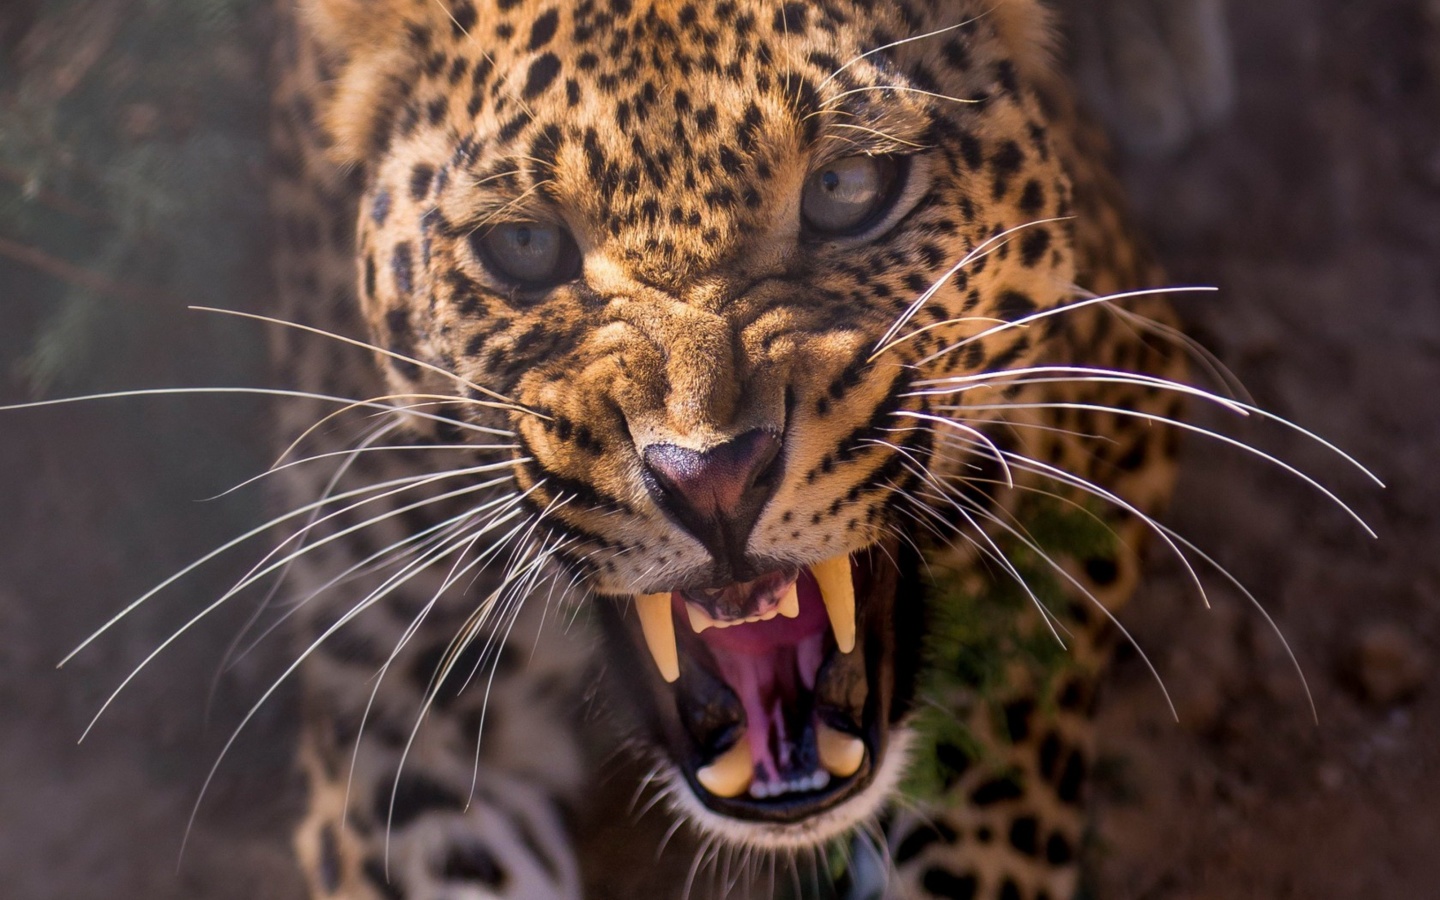 Leopard attack screenshot #1 1440x900